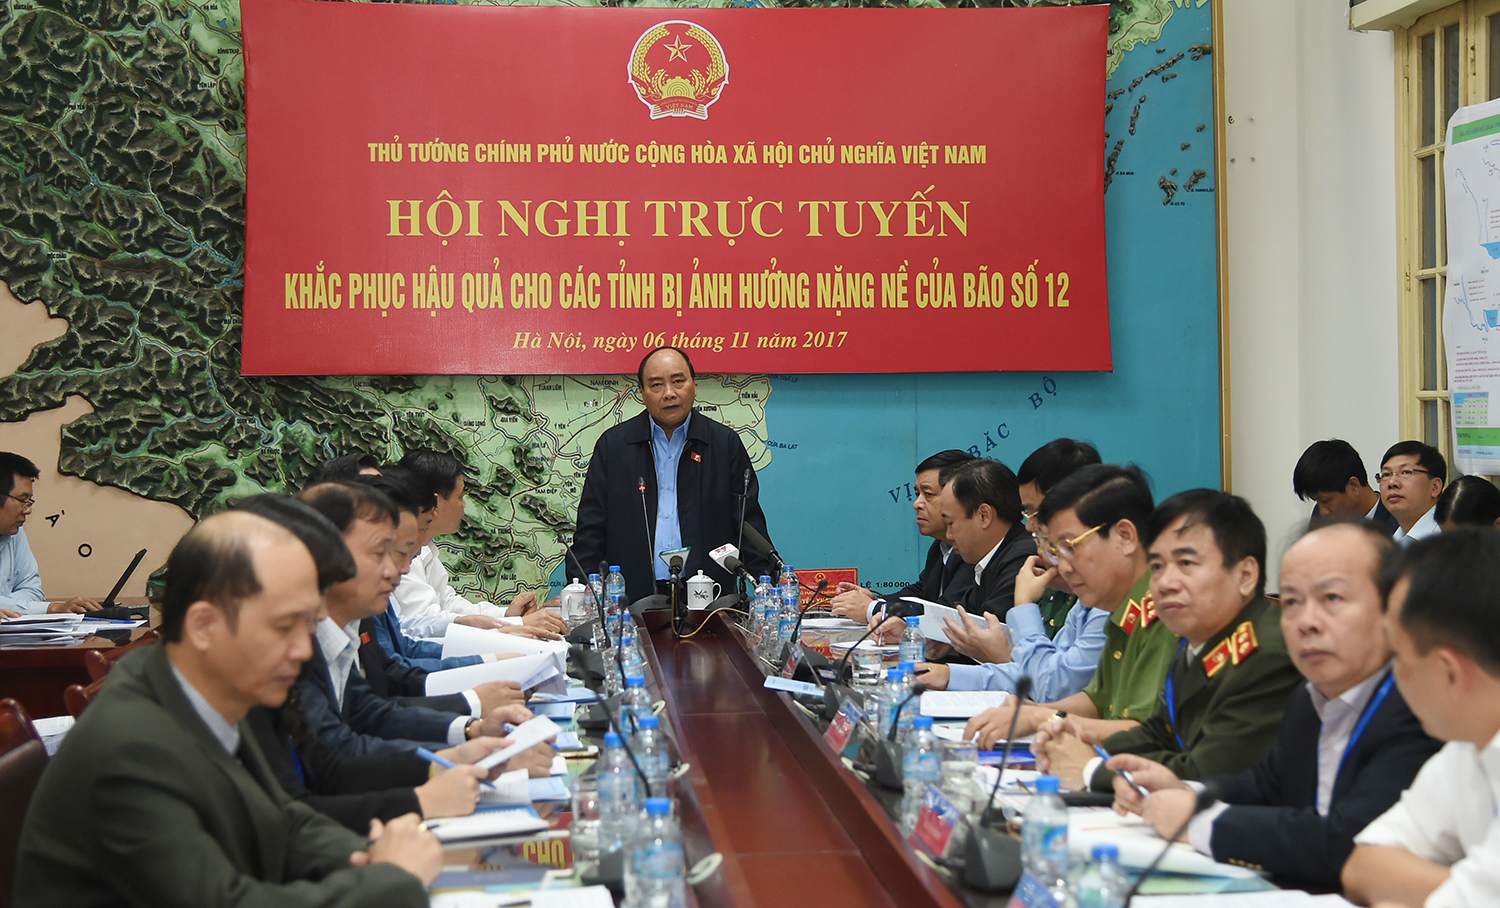 Thủ tướng Nguyễn Xuân Phúc chủ trì hội nghị trực tuyến khắc phục hậu quả tại các tỉnh bị ảnh hưởng nặng nề của bão số 12.